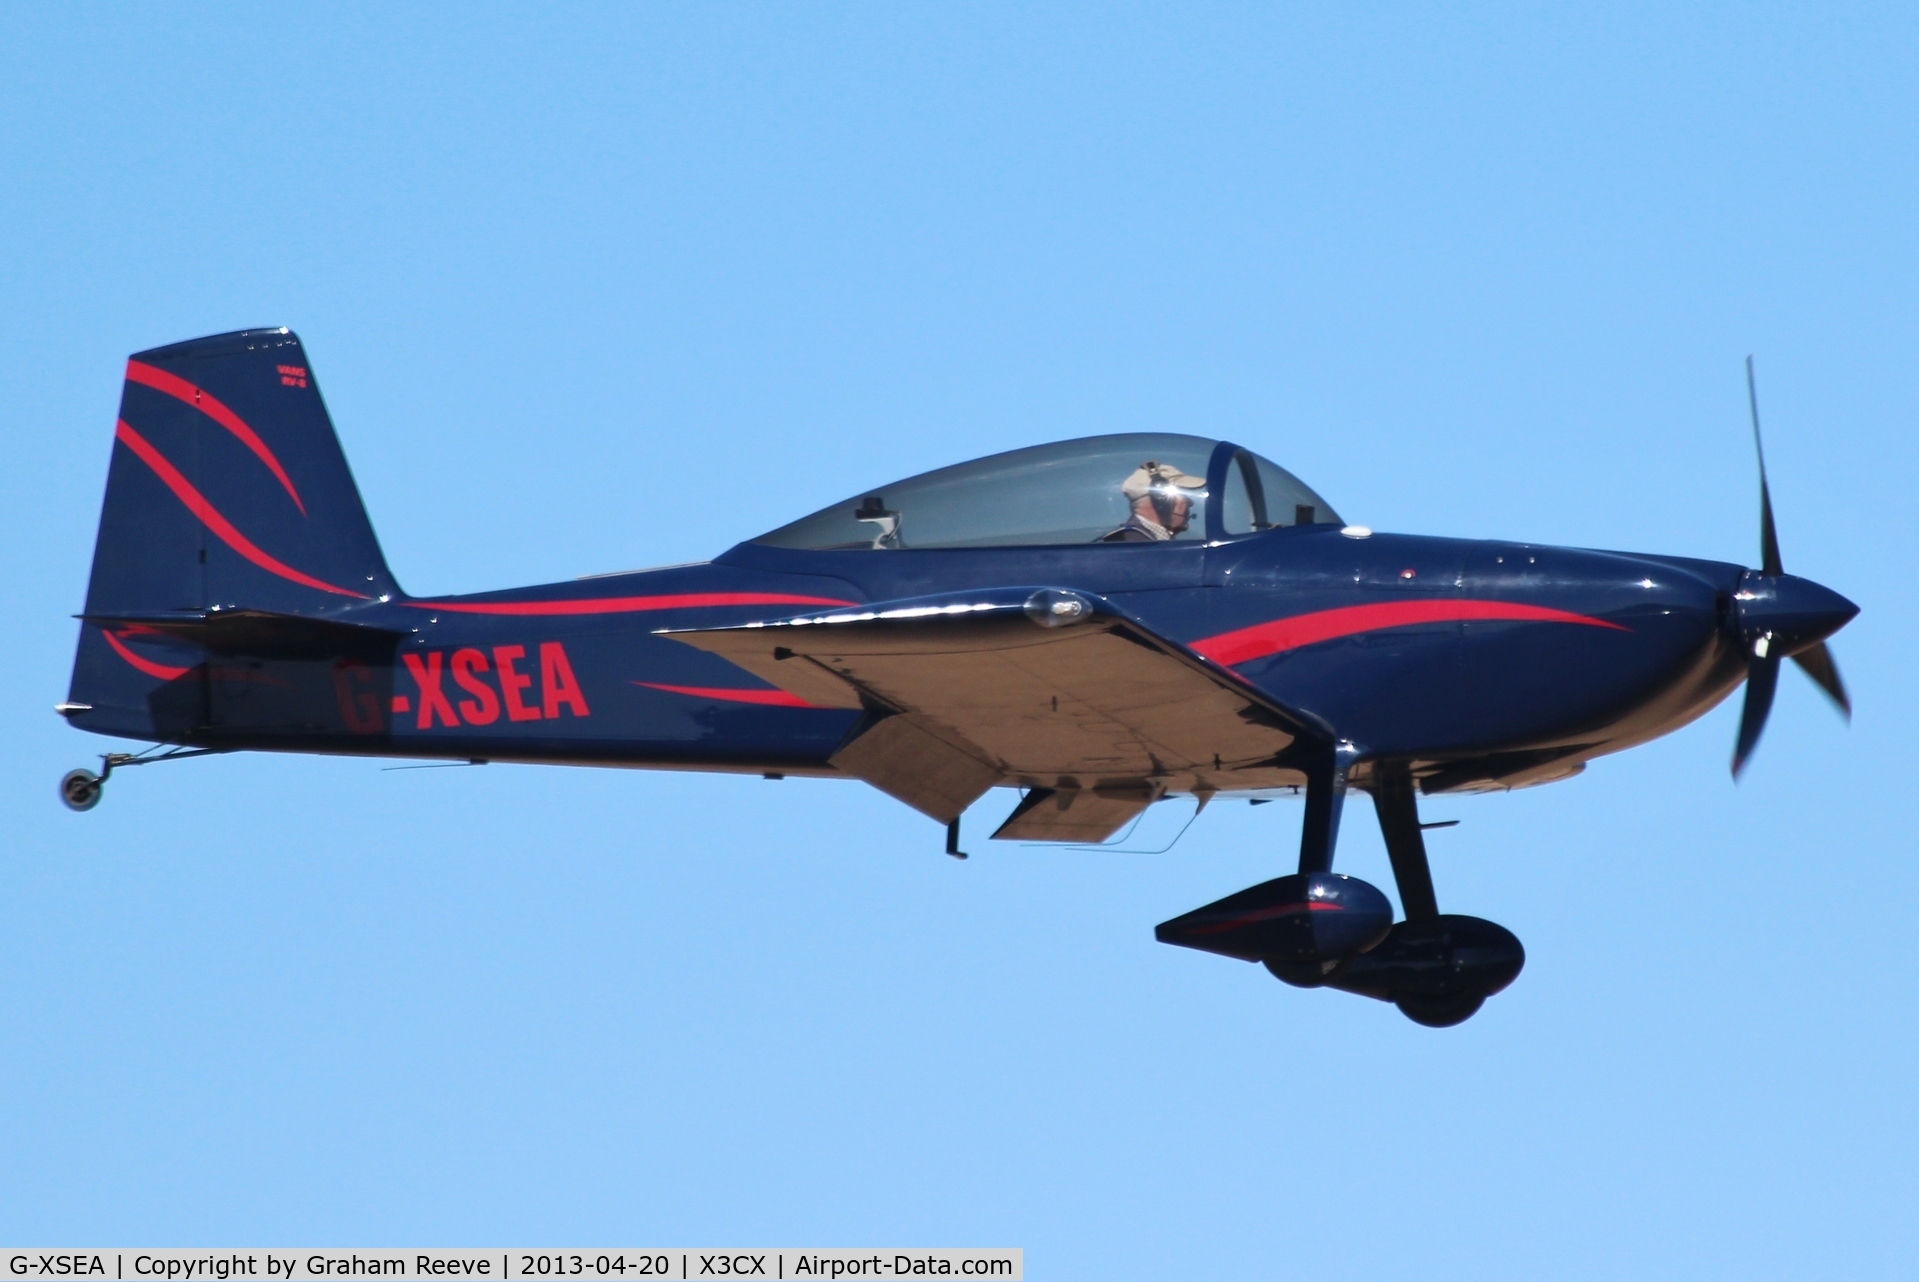 G-XSEA, 2005 Vans RV-8 C/N PFA 303-14228, On finals to land at Northrepps.